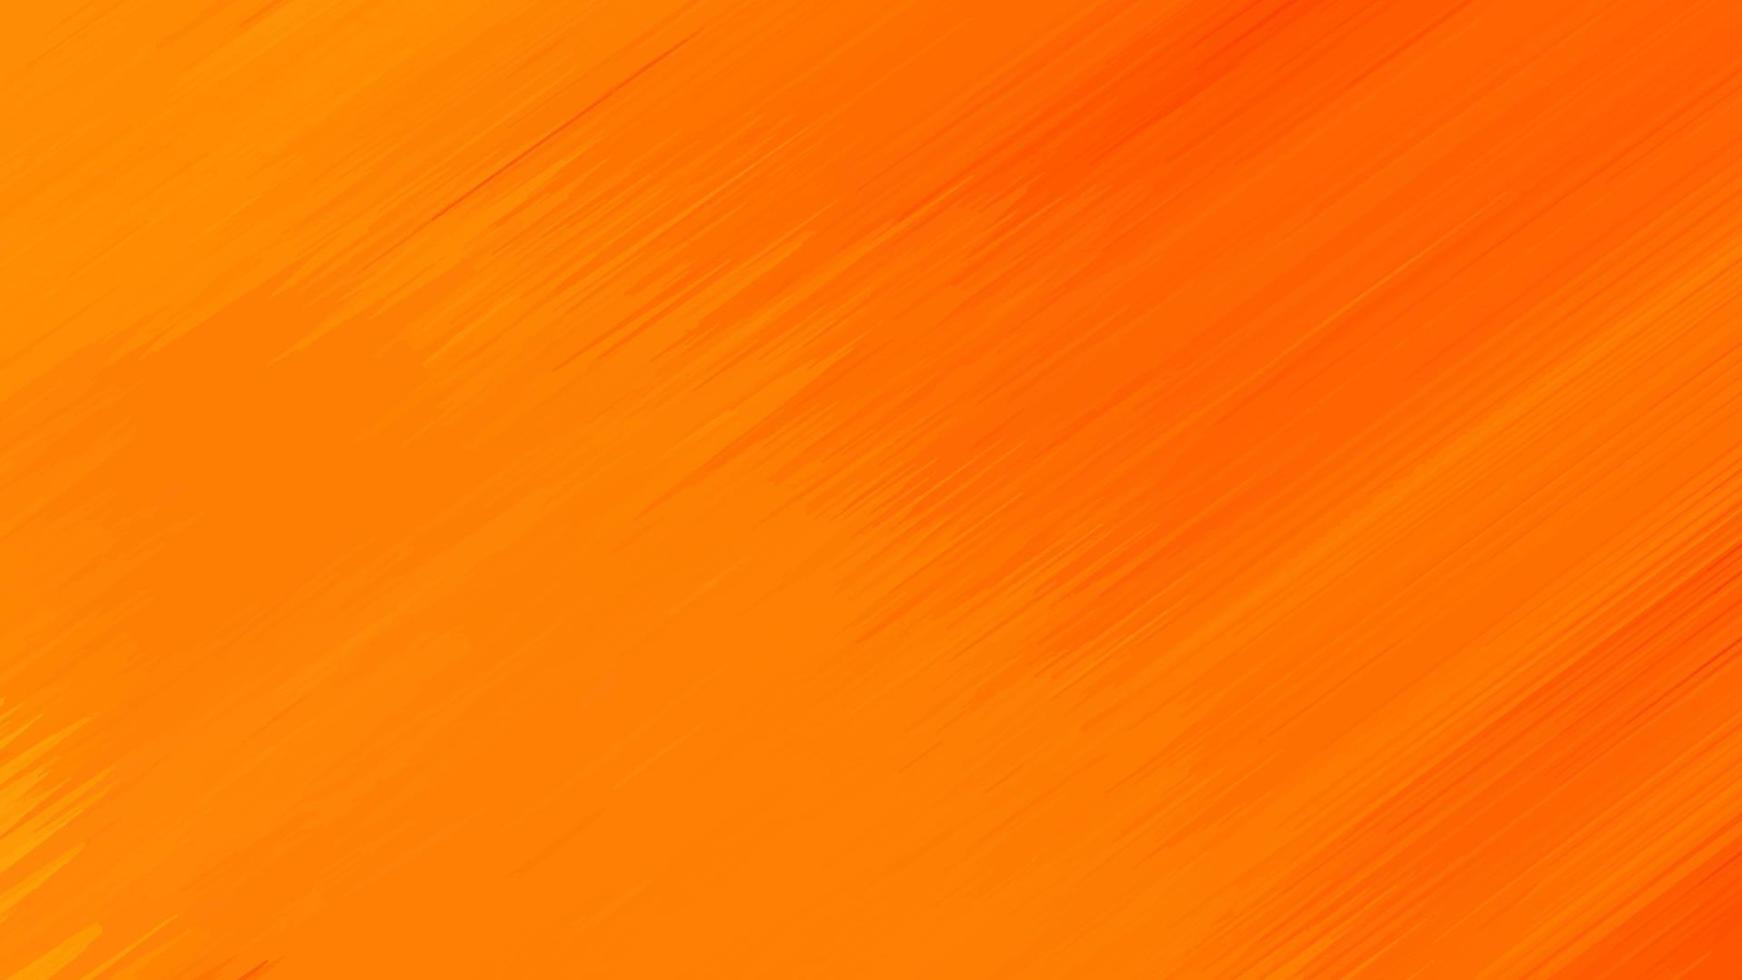 Hình nền trừu tượng màu cam đương đại sẽ khiến chiếc điện thoại của bạn trở nên phong cách và sành điệu hơn bao giờ hết. Với những đường nét độc đáo và sắc sảo, chiếc điện thoại của bạn sẽ được tô điểm bởi gam màu cam đương đại rực rỡ. Nhấn vào hình ảnh để cảm nhận sự độc đáo này.